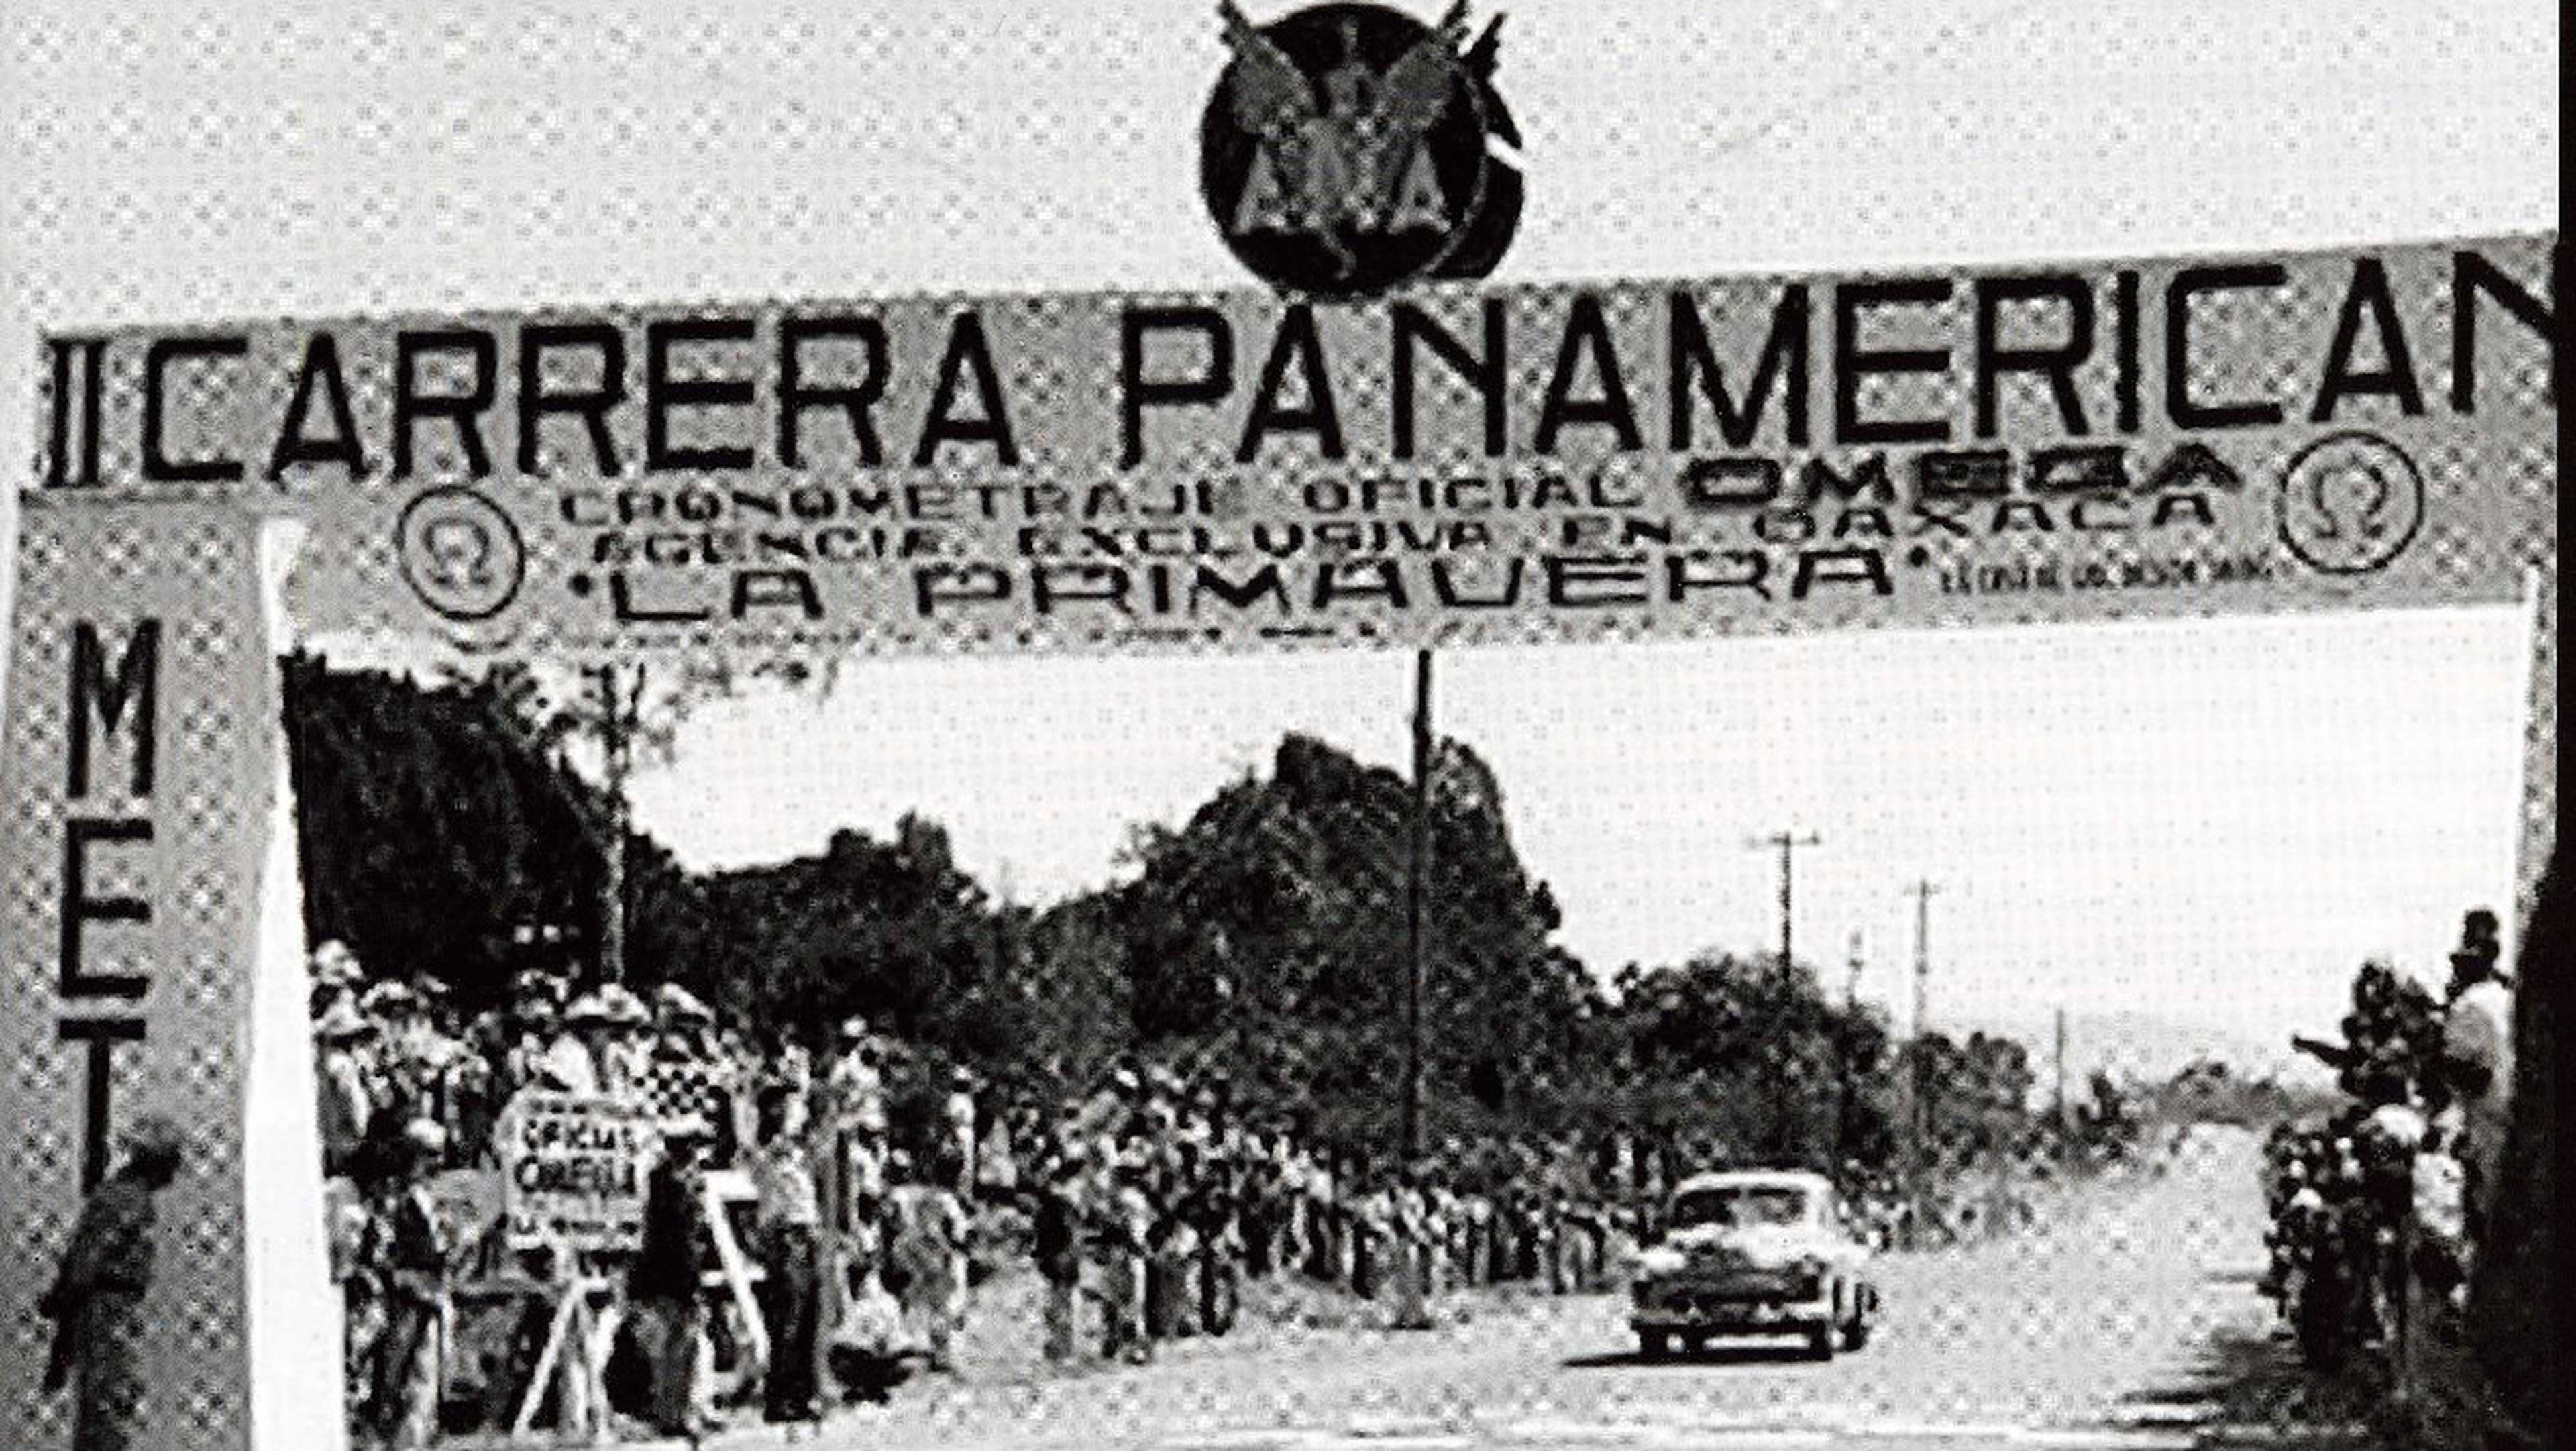 Historia de la Panamericana